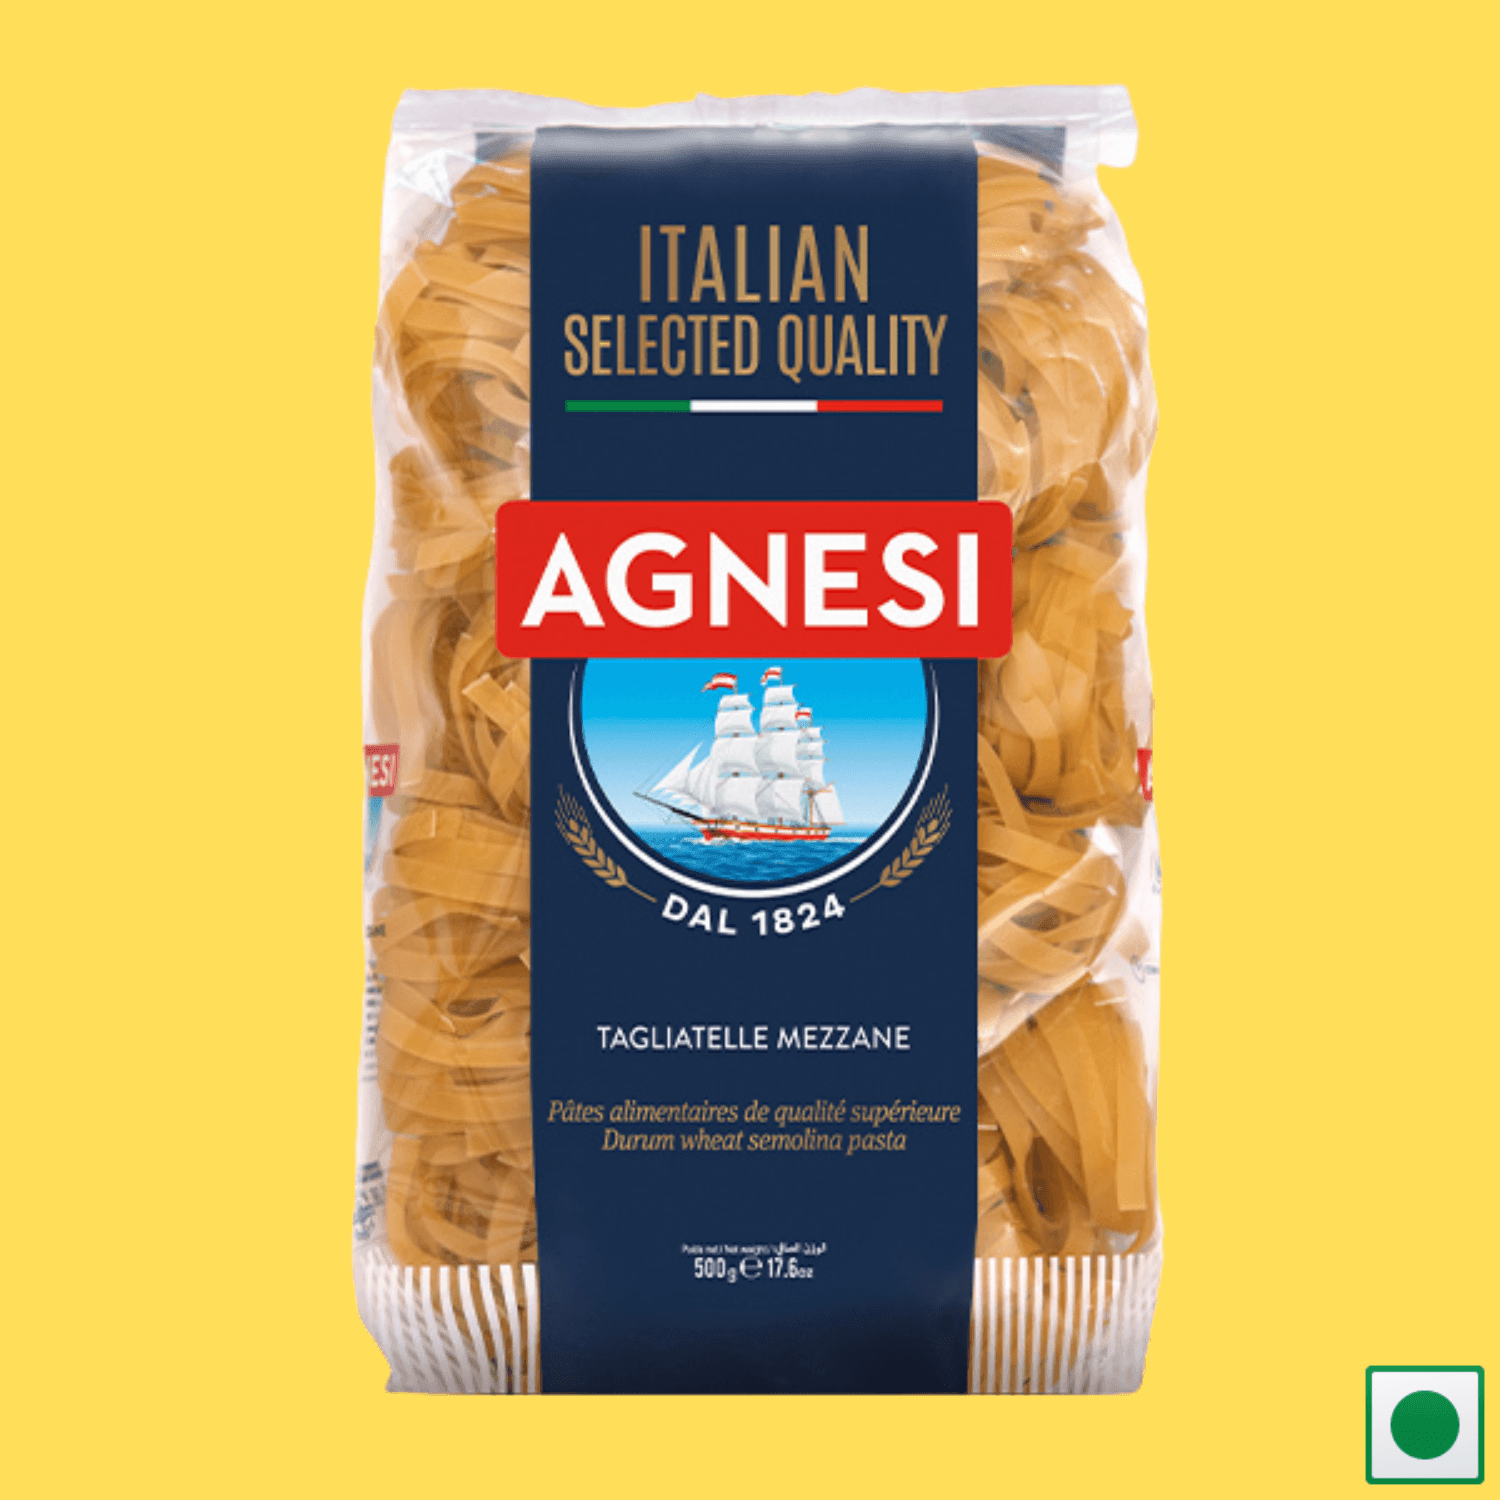 Agnesi Tagliatelle Mezzane Pasta, 500g (Imported) - Super 7 Mart